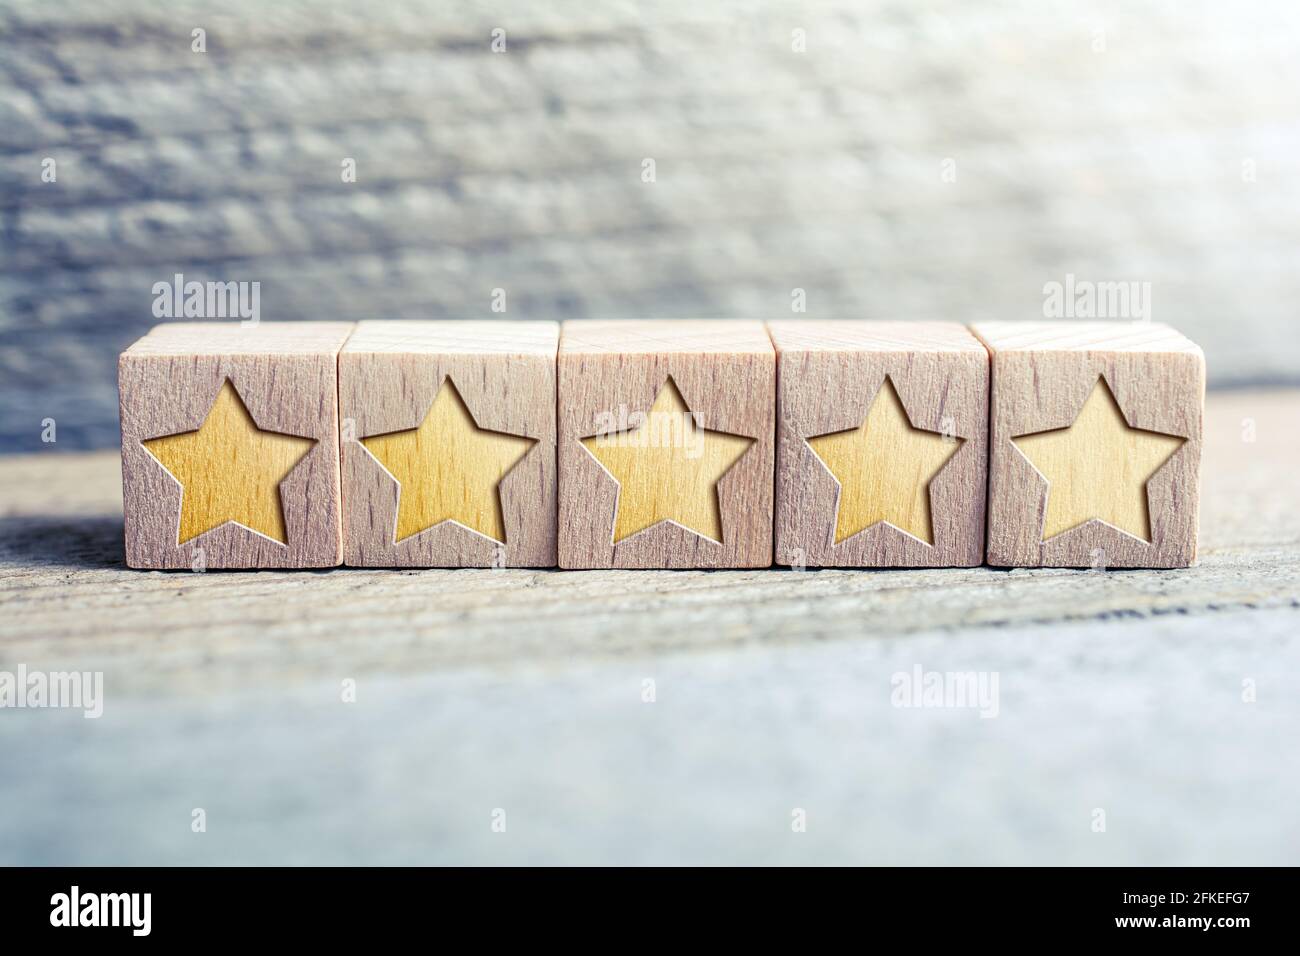 Classement 5 étoiles formé de blocs de bois sur UN conseil - concept de qualité Banque D'Images